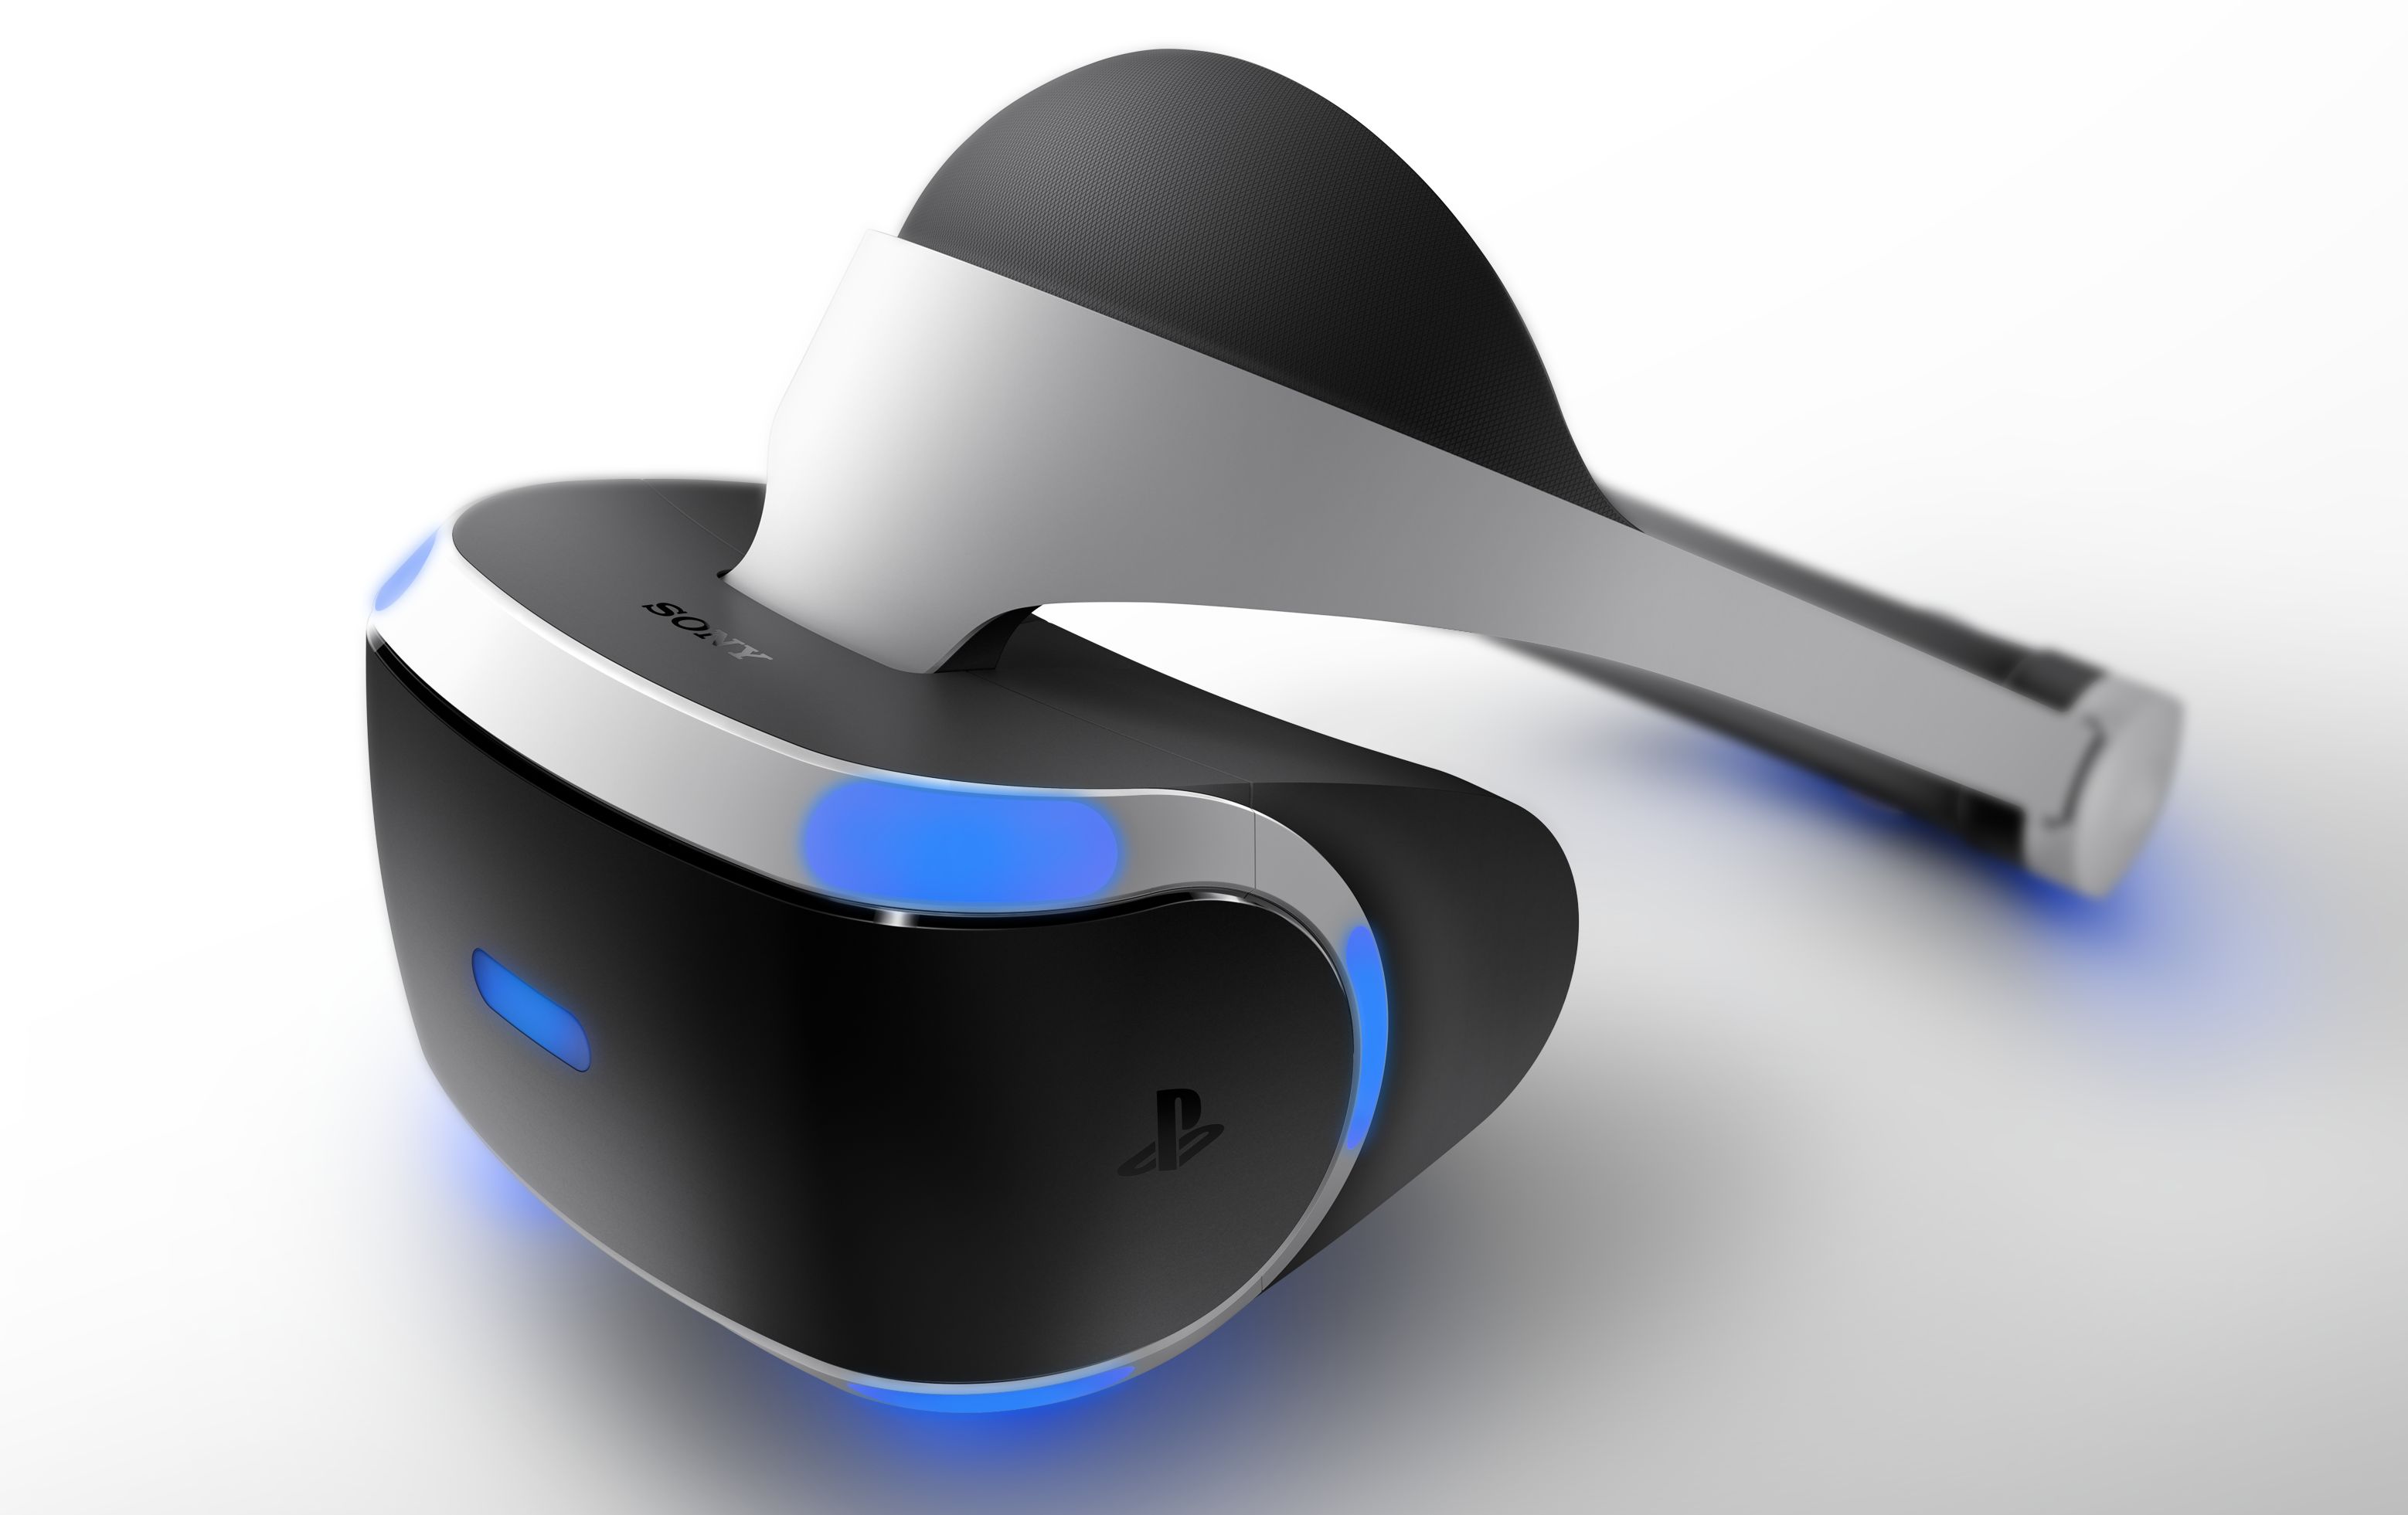 [Gamescom 2015] provati Project Morpheus e il nuovo Oculus Rift